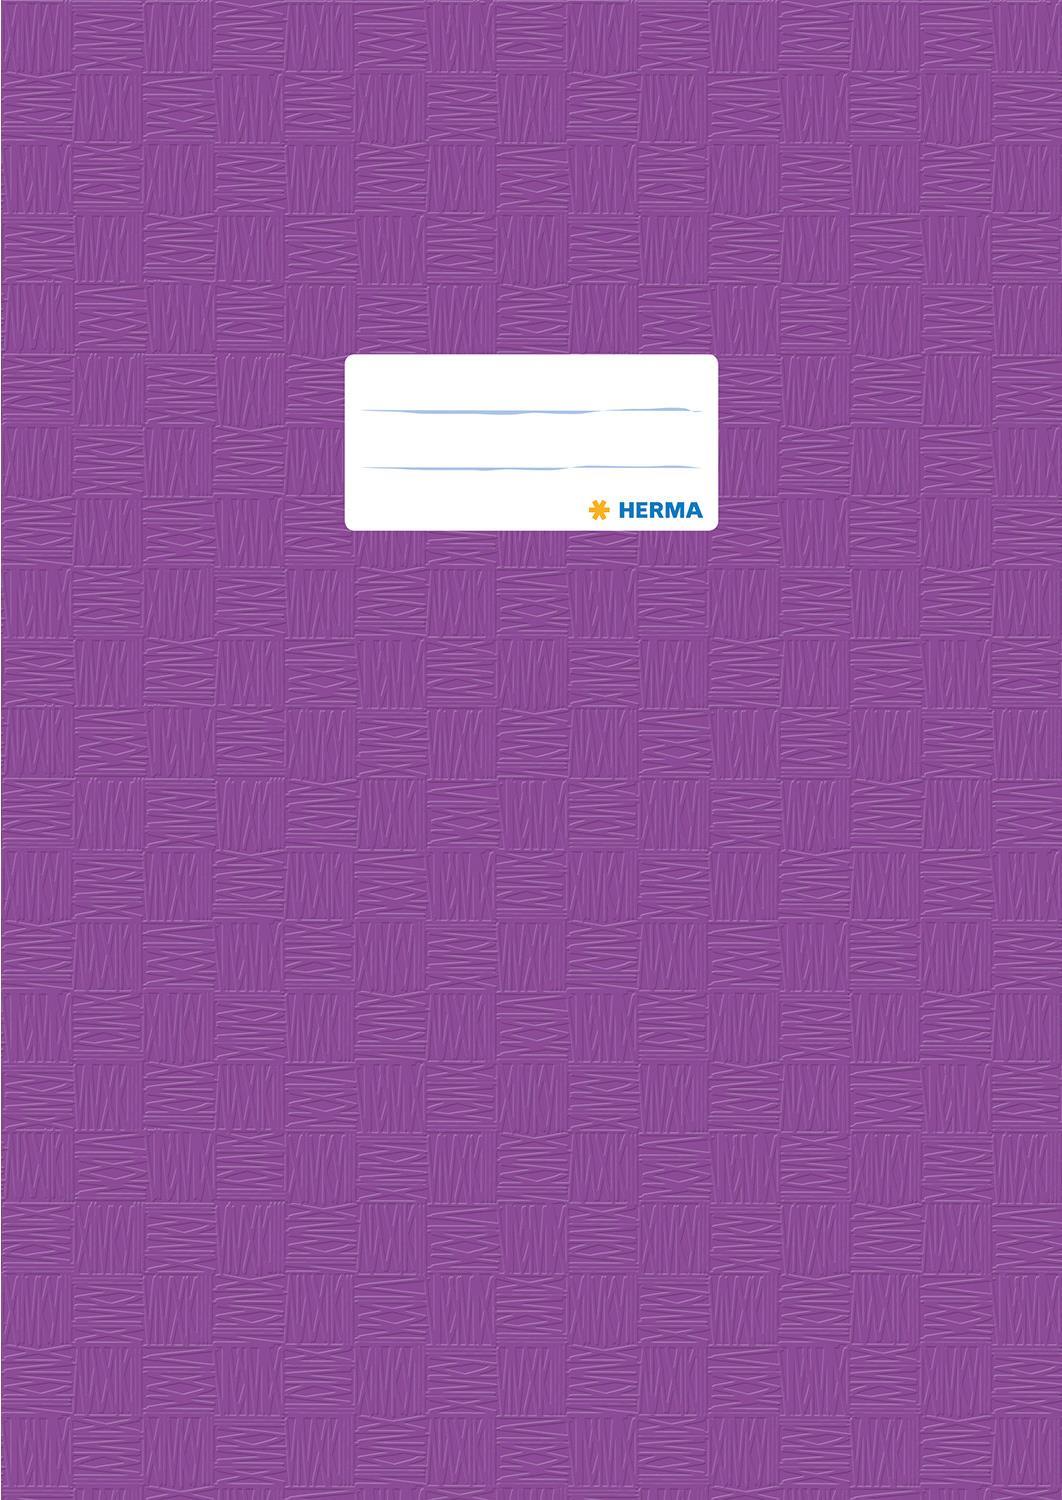 HERMA Heftschoner, DIN A4, aus PP, violett gedeckt mit Strukturprägung, mit Beschriftungsetikett - 25 Stück (7446)